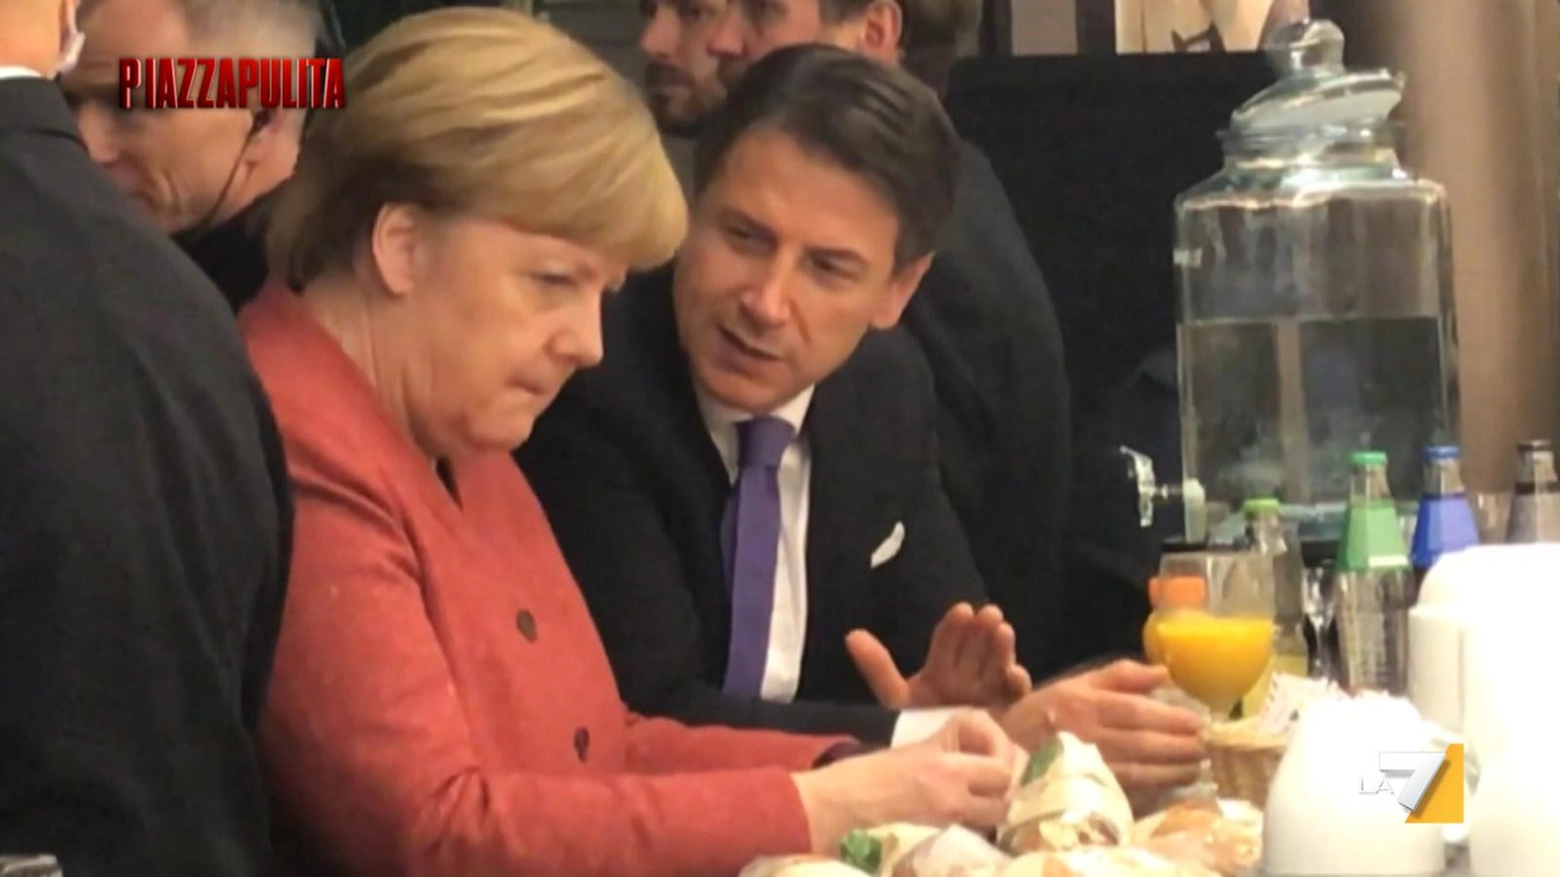 Merkel e Conte nel fuorionda di Piazzapulita